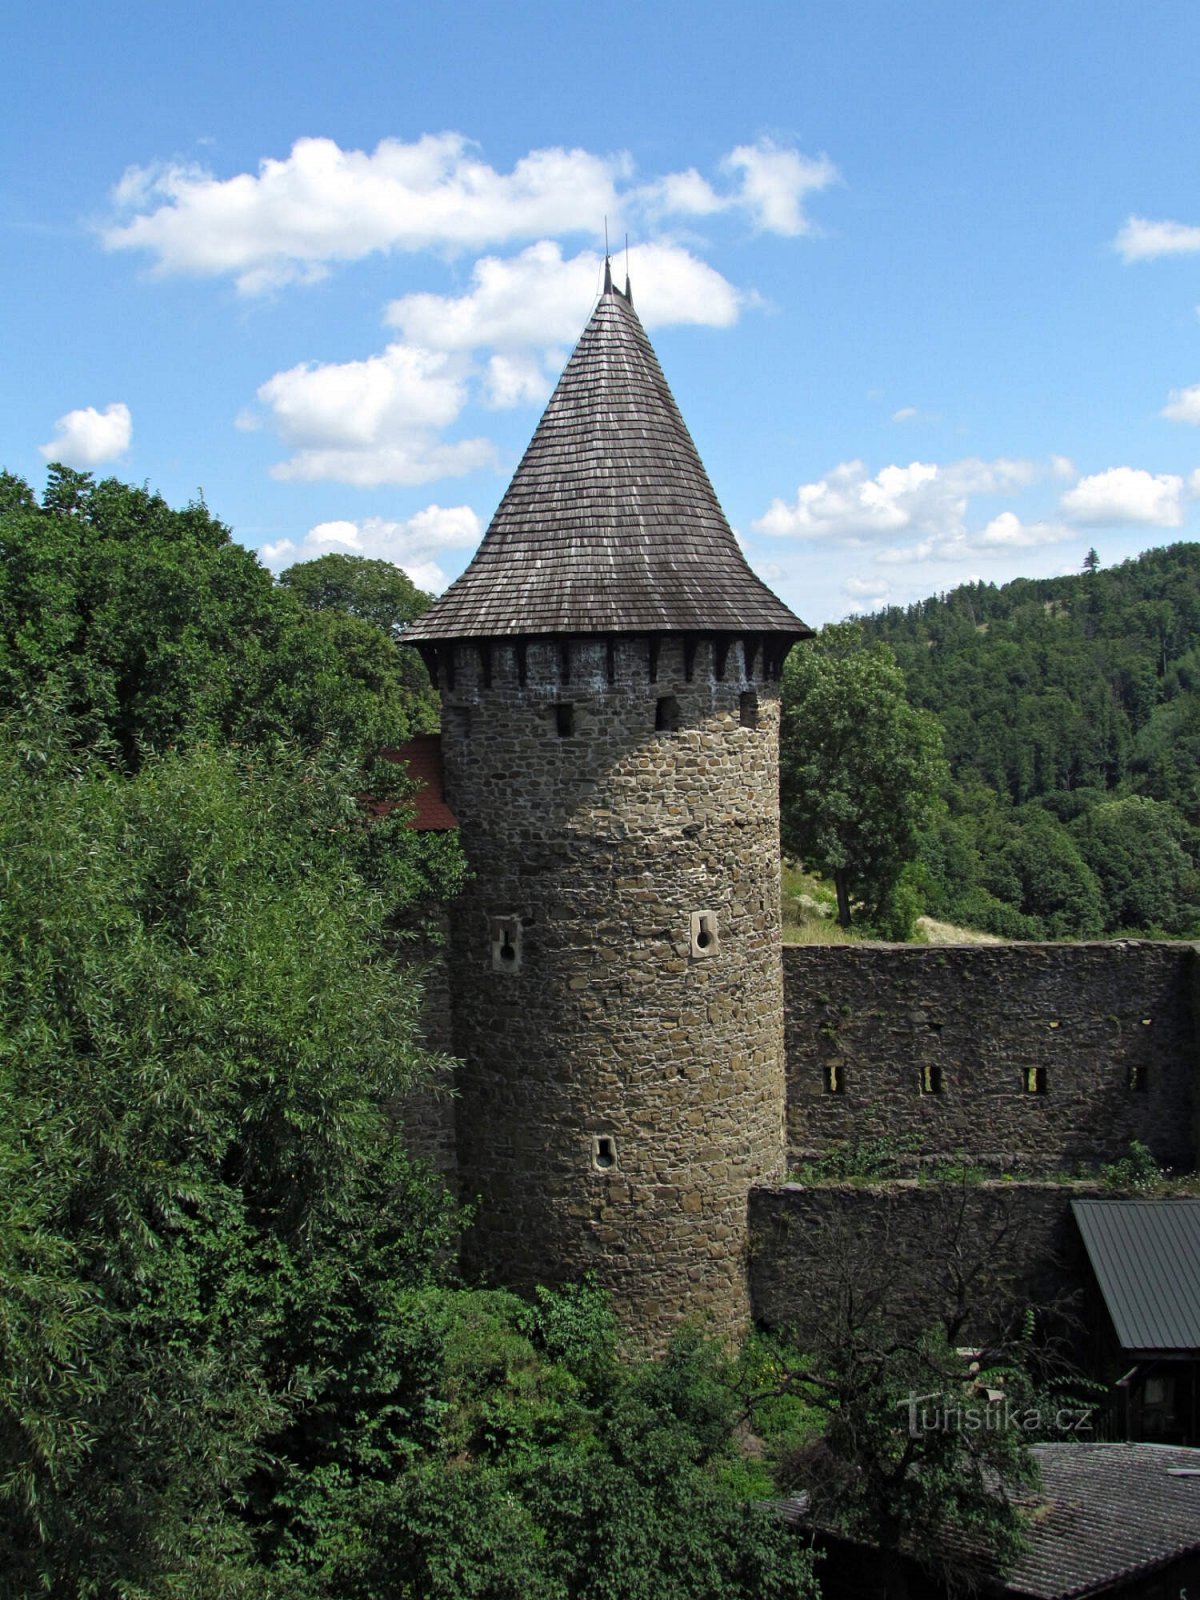 Vizitarea la Castelul Helfštýn